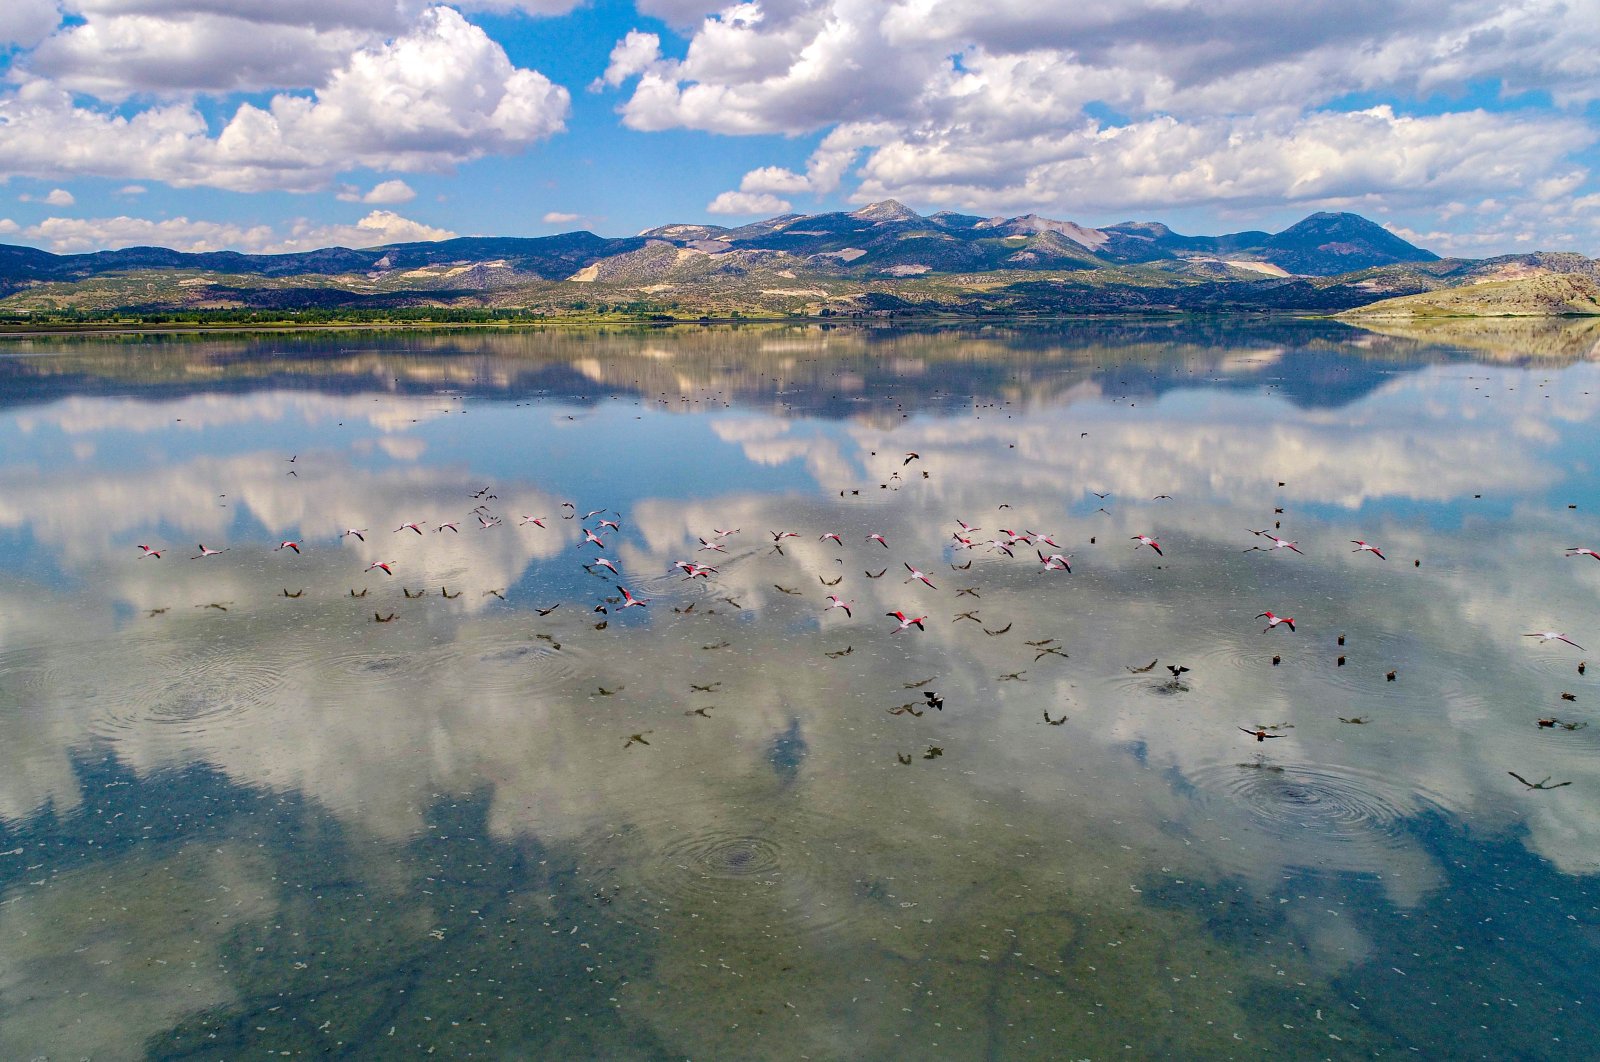 Migratory birds fly over Yarışlı Lake, Burdur, June 6, 2020. (DHA Photo)